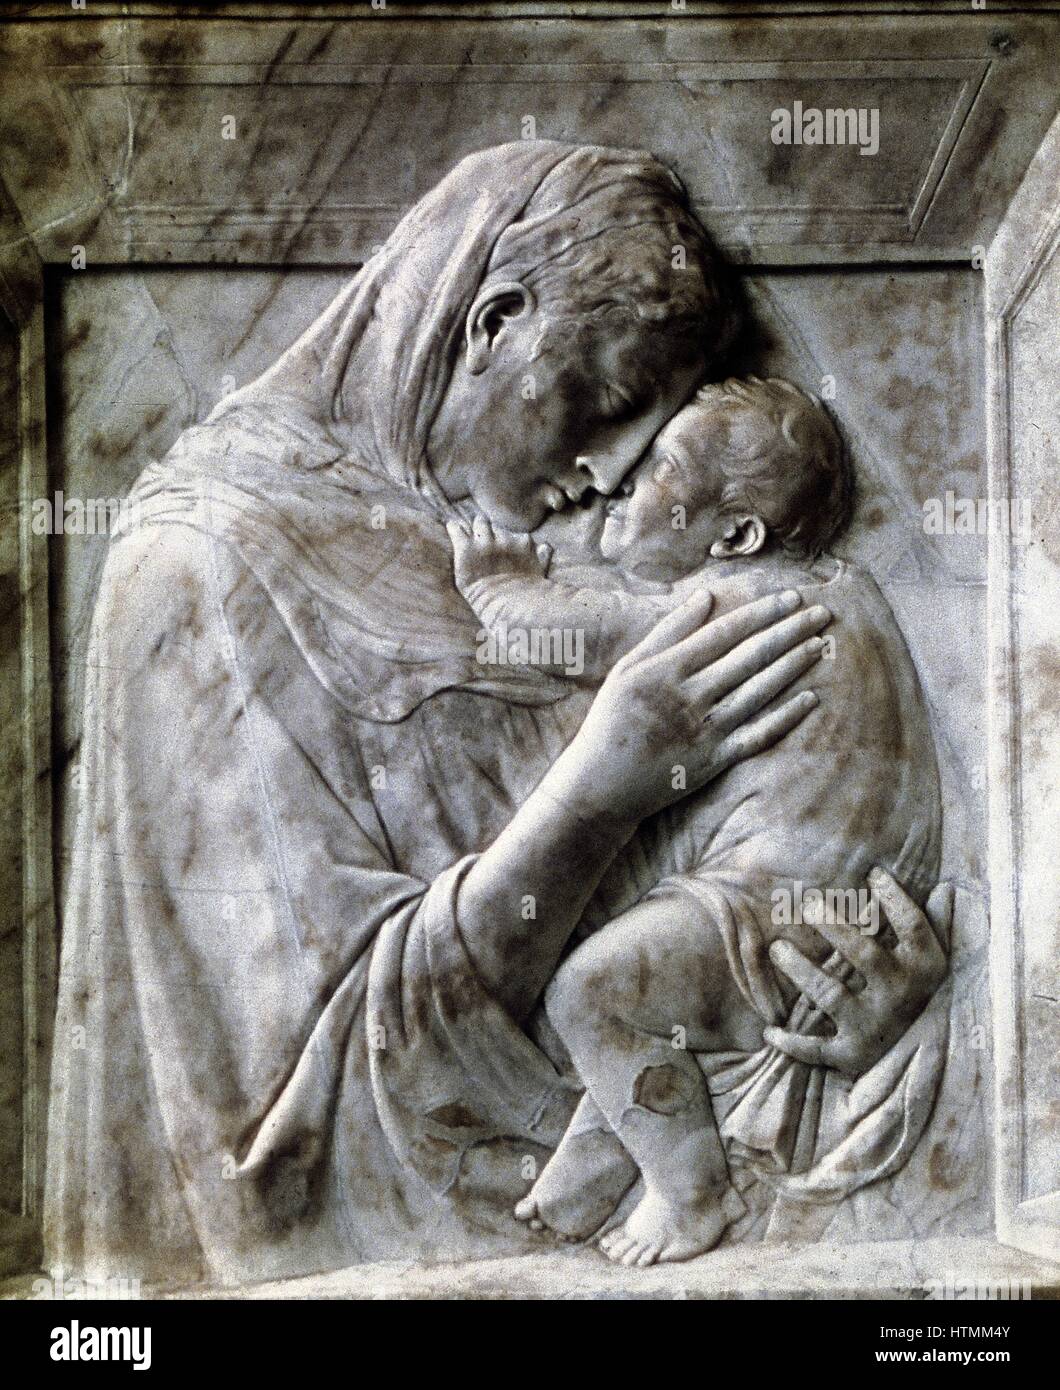 DONATELLO (C1386-1466) escultor florentino. El italiano. Los Pazzi Madonna (Virgen y Niño) de Mármol, c1417-18. Staatliche Museen zu Berlin Foto de stock